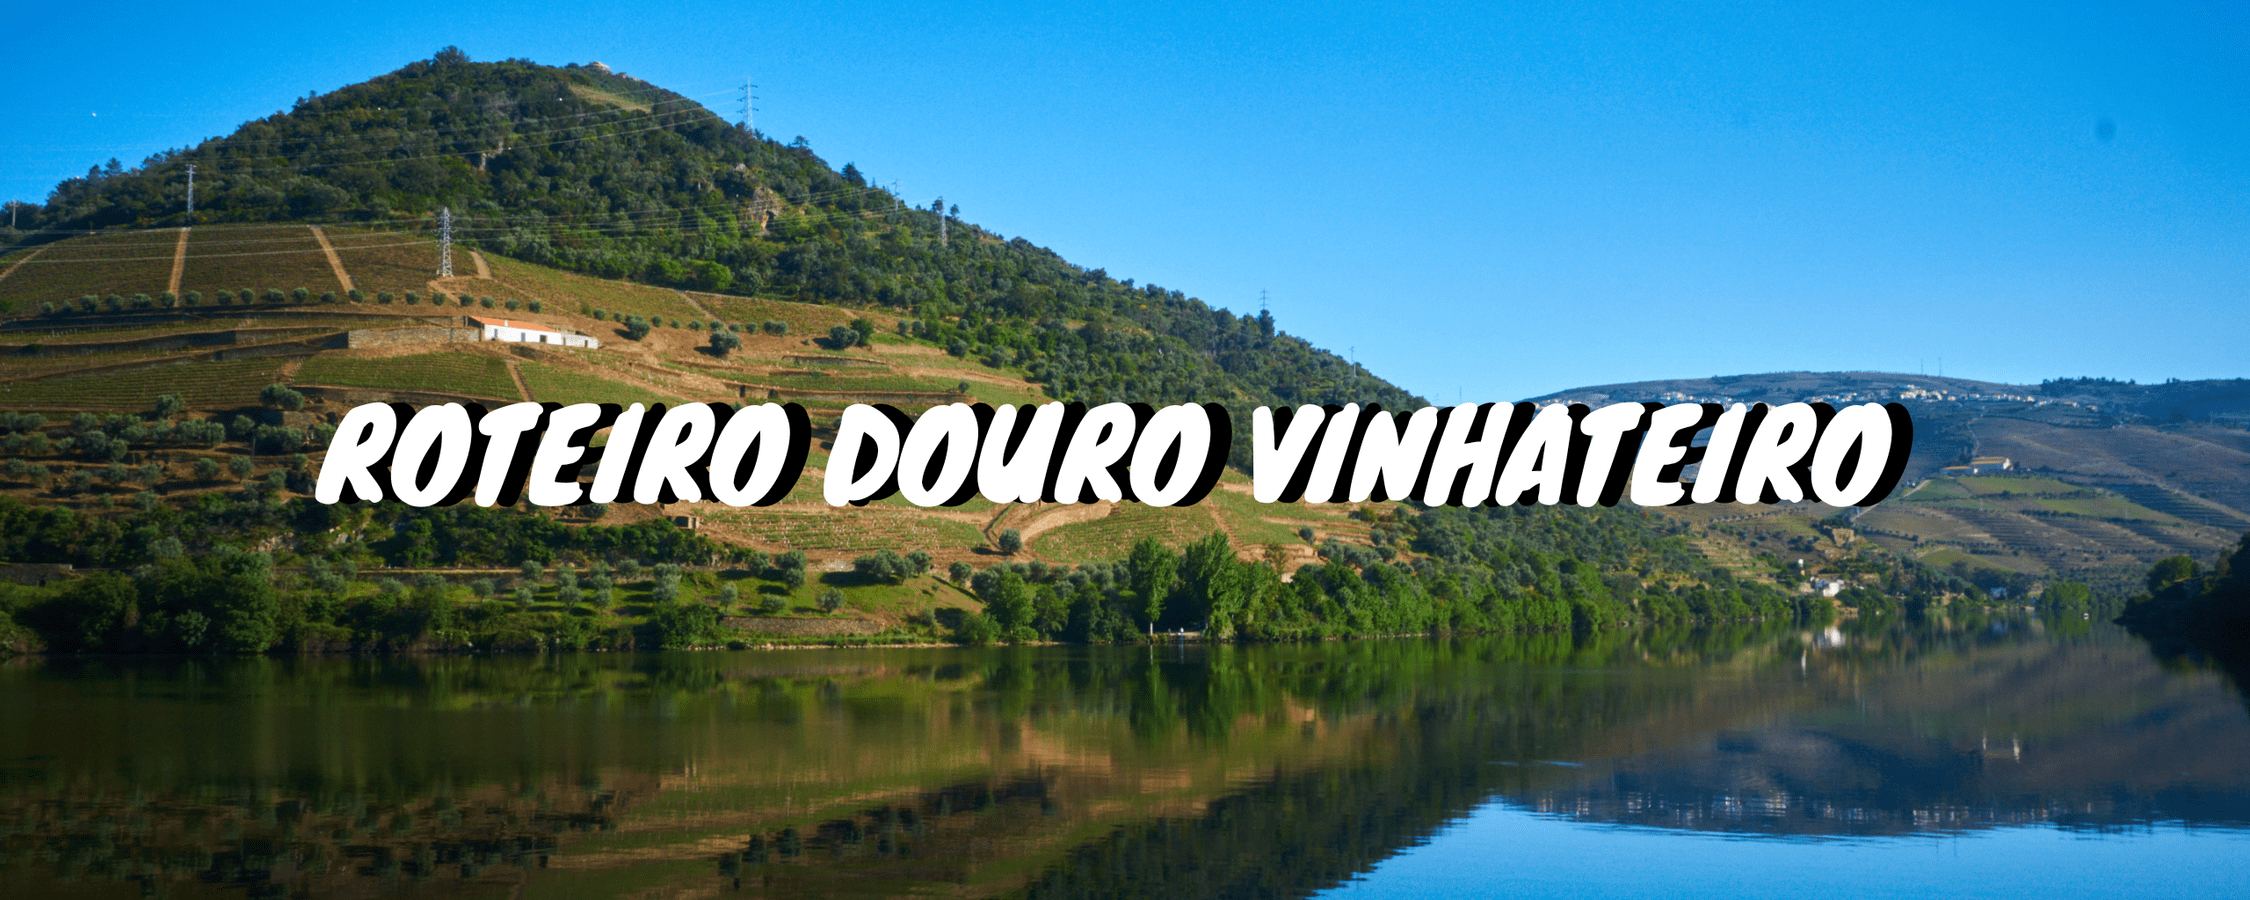 Header Douro Vinhateiro